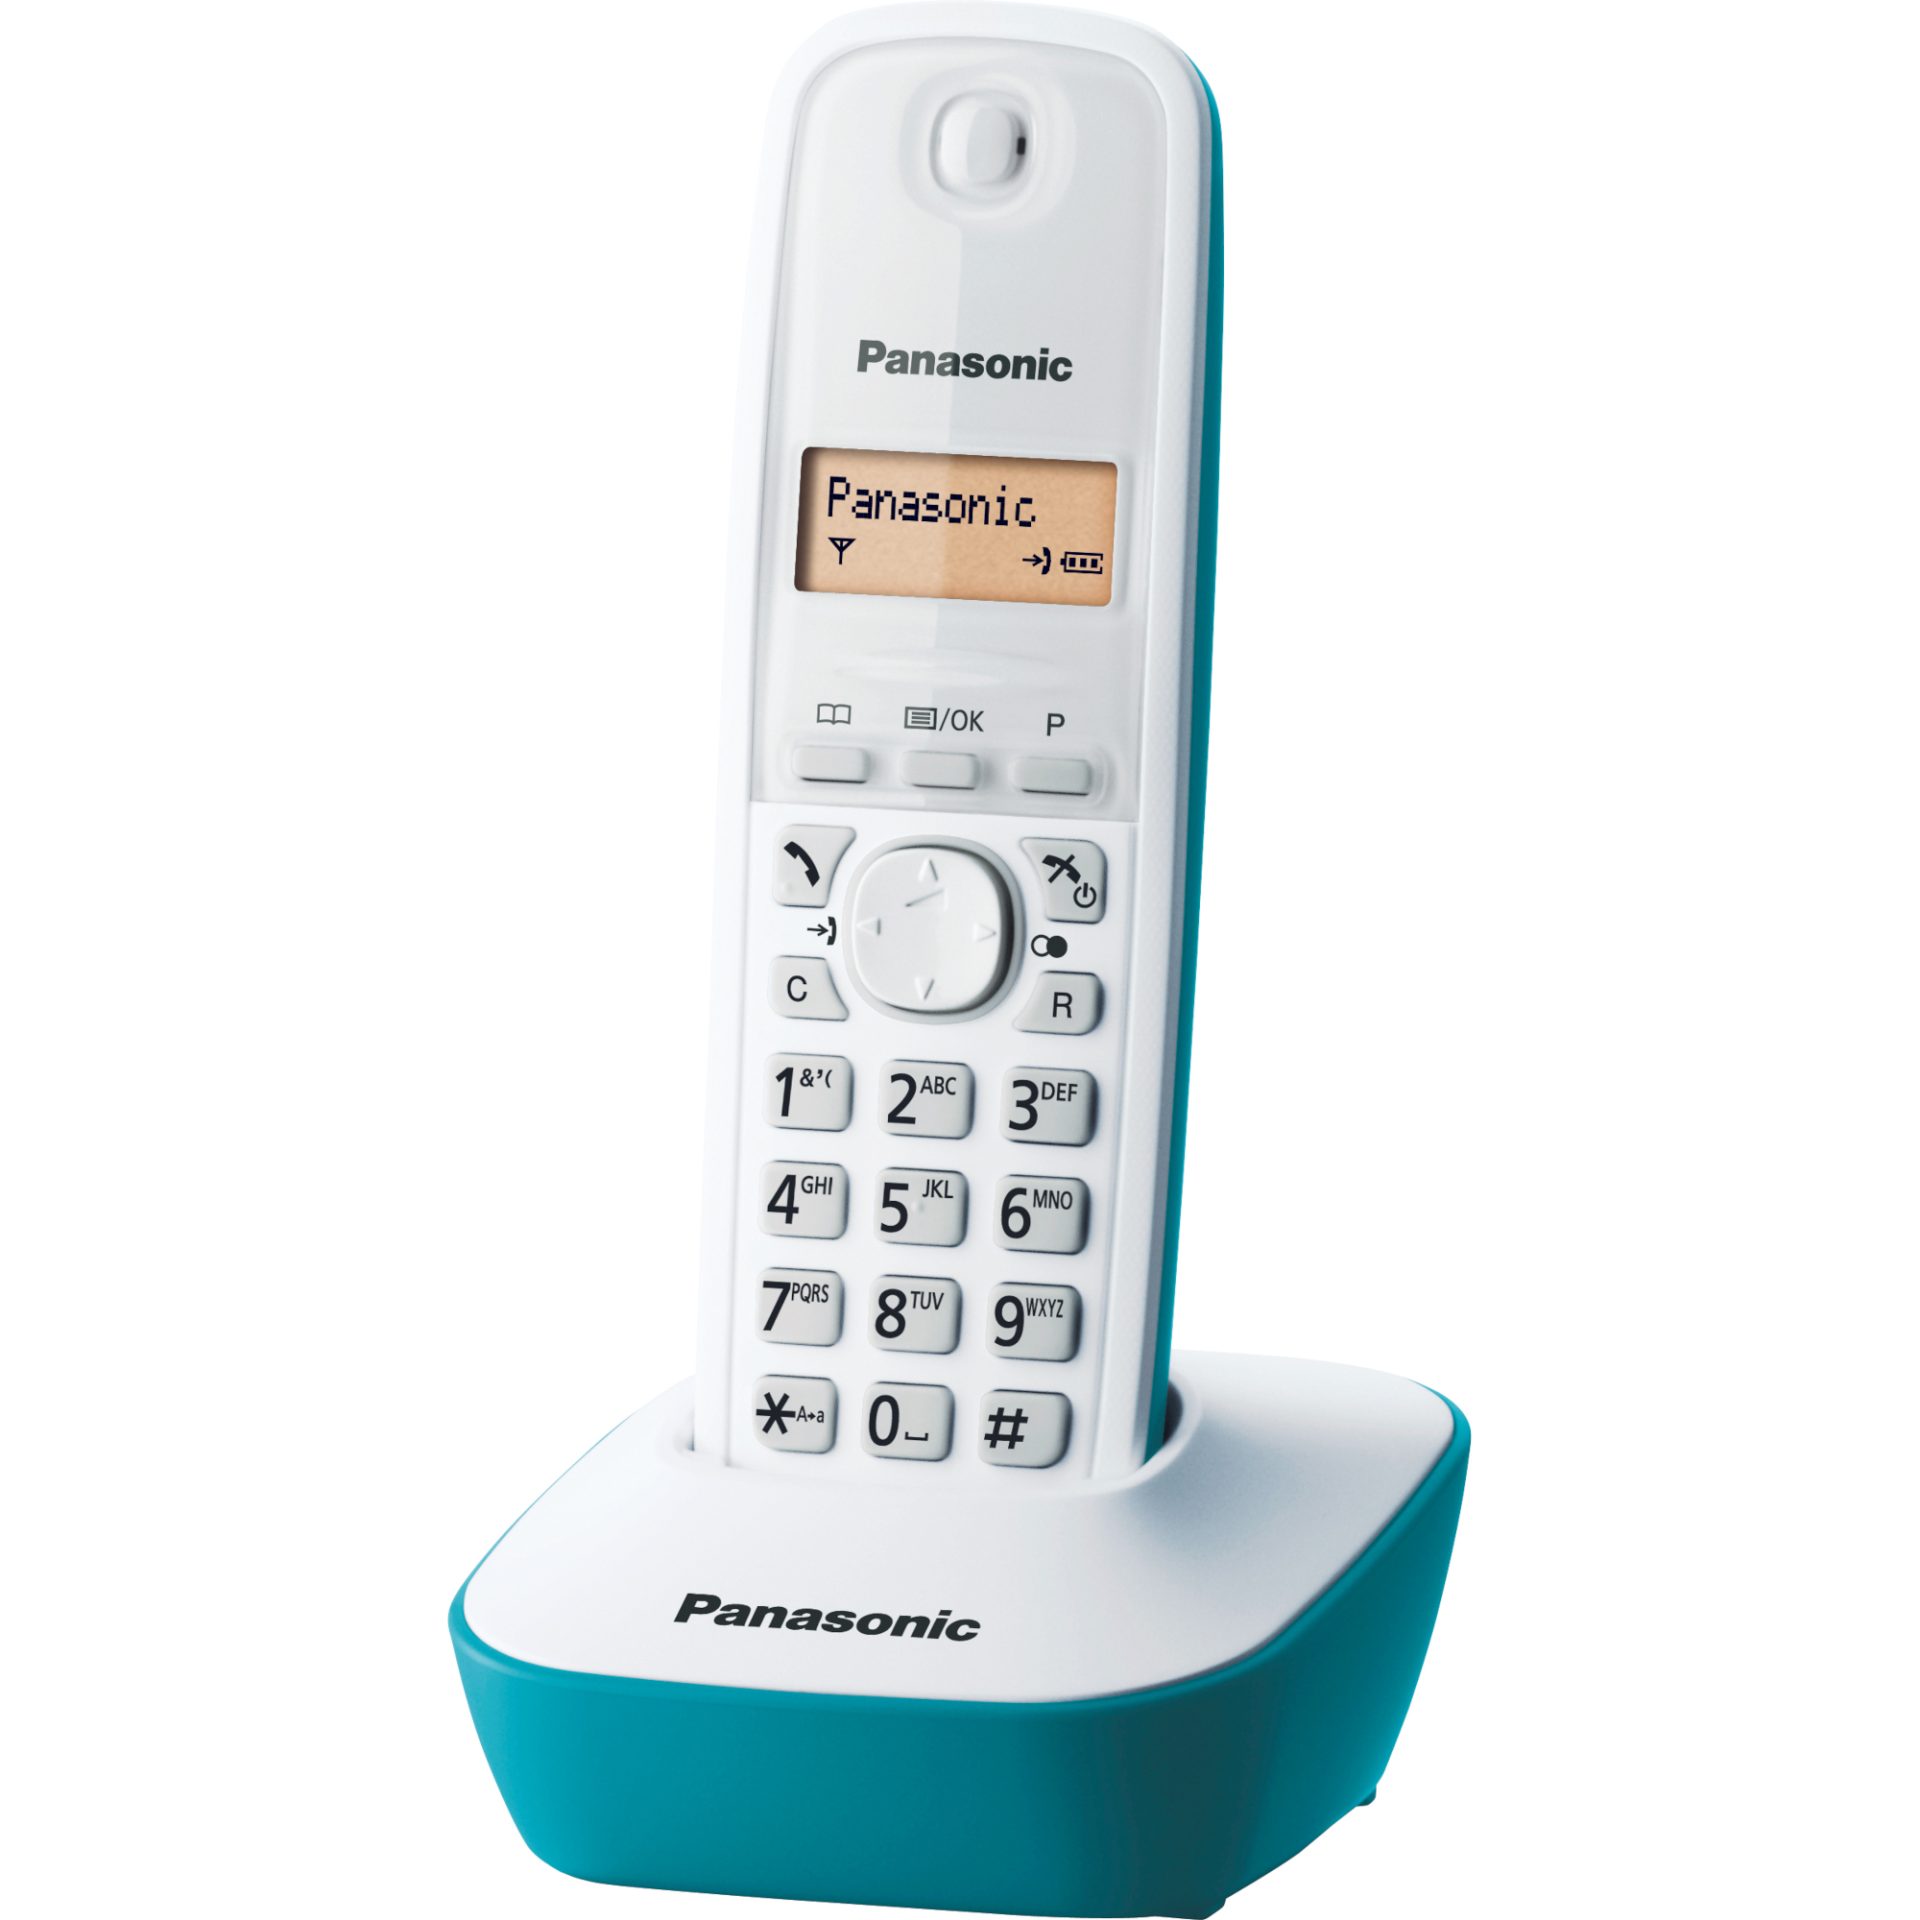 Panasonic KX-TG1611 DECT bezdrátový telefon (snadné použití, telefonní seznam 50 položek, podsvícený LCD displej, hodiny, budík), bílá a modrá